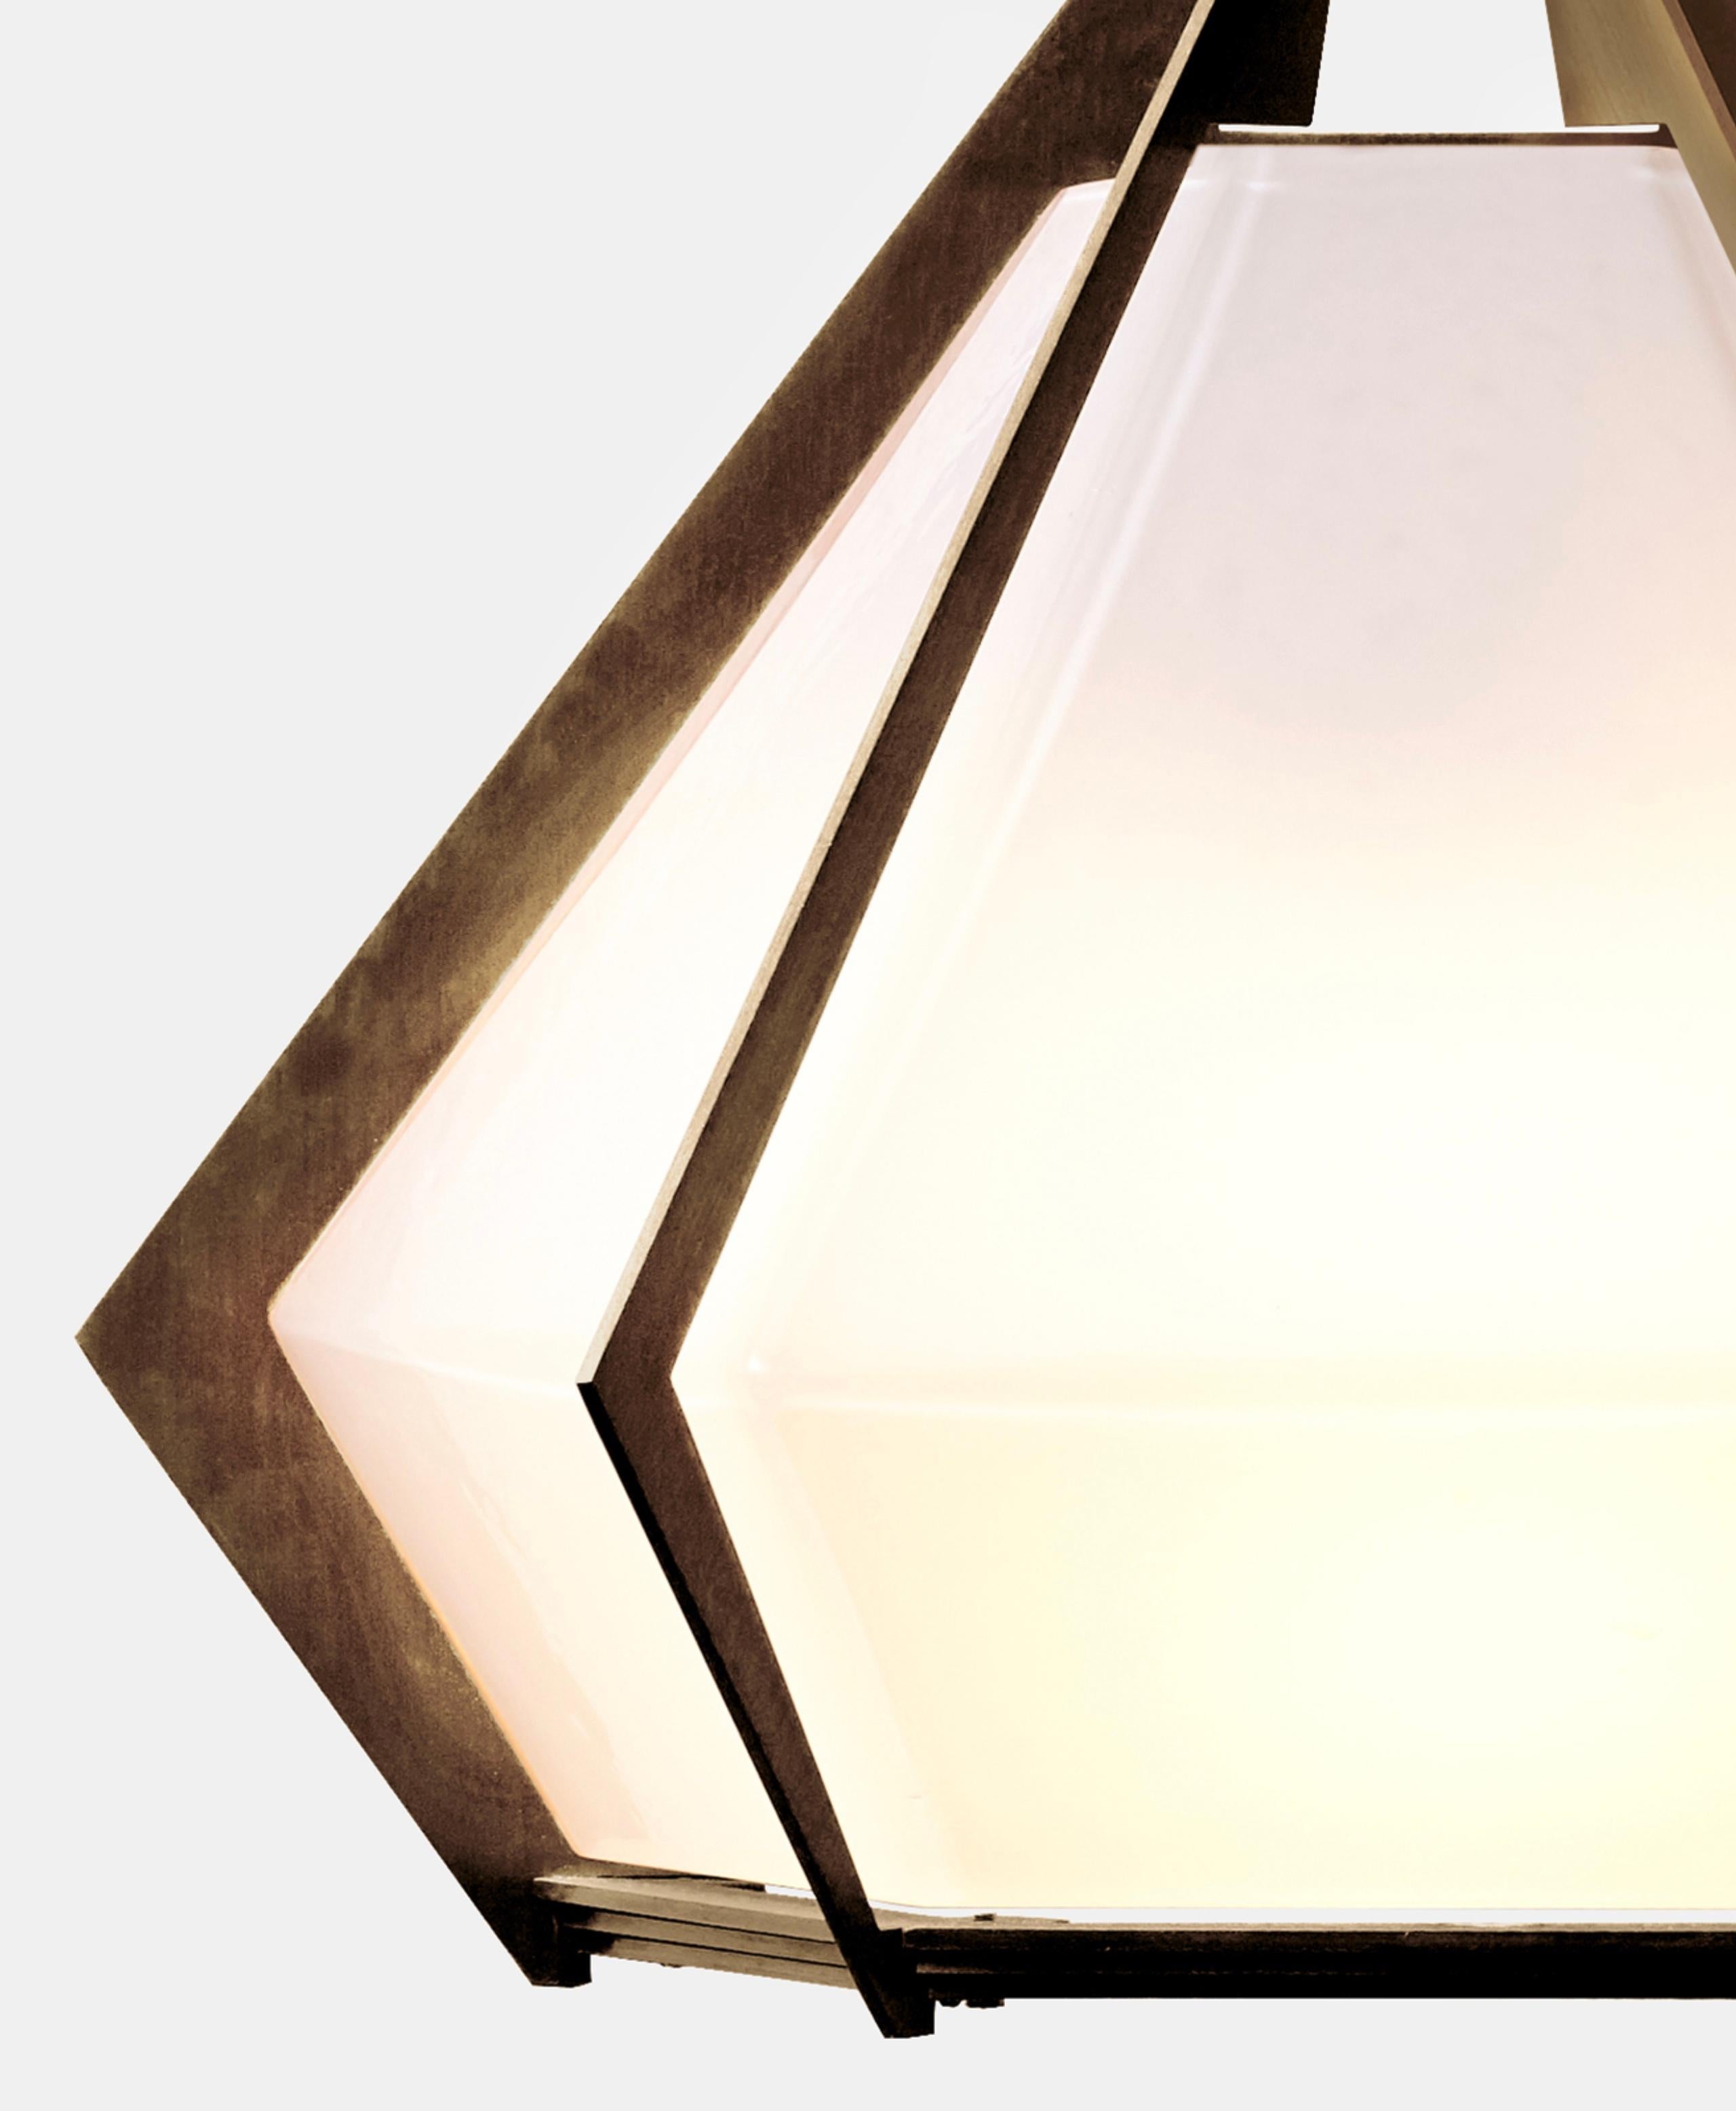 Die Harlow Wall Sconce bietet einen eleganten Sternenhimmel, der durch den Schirm aus mundgeblasenem Glas reflektiert und gebrochen wird. Die Wandleuchte Harlow ist ein funkelndes Prisma, das direkt von der Welt des Schmucks inspiriert ist. Der